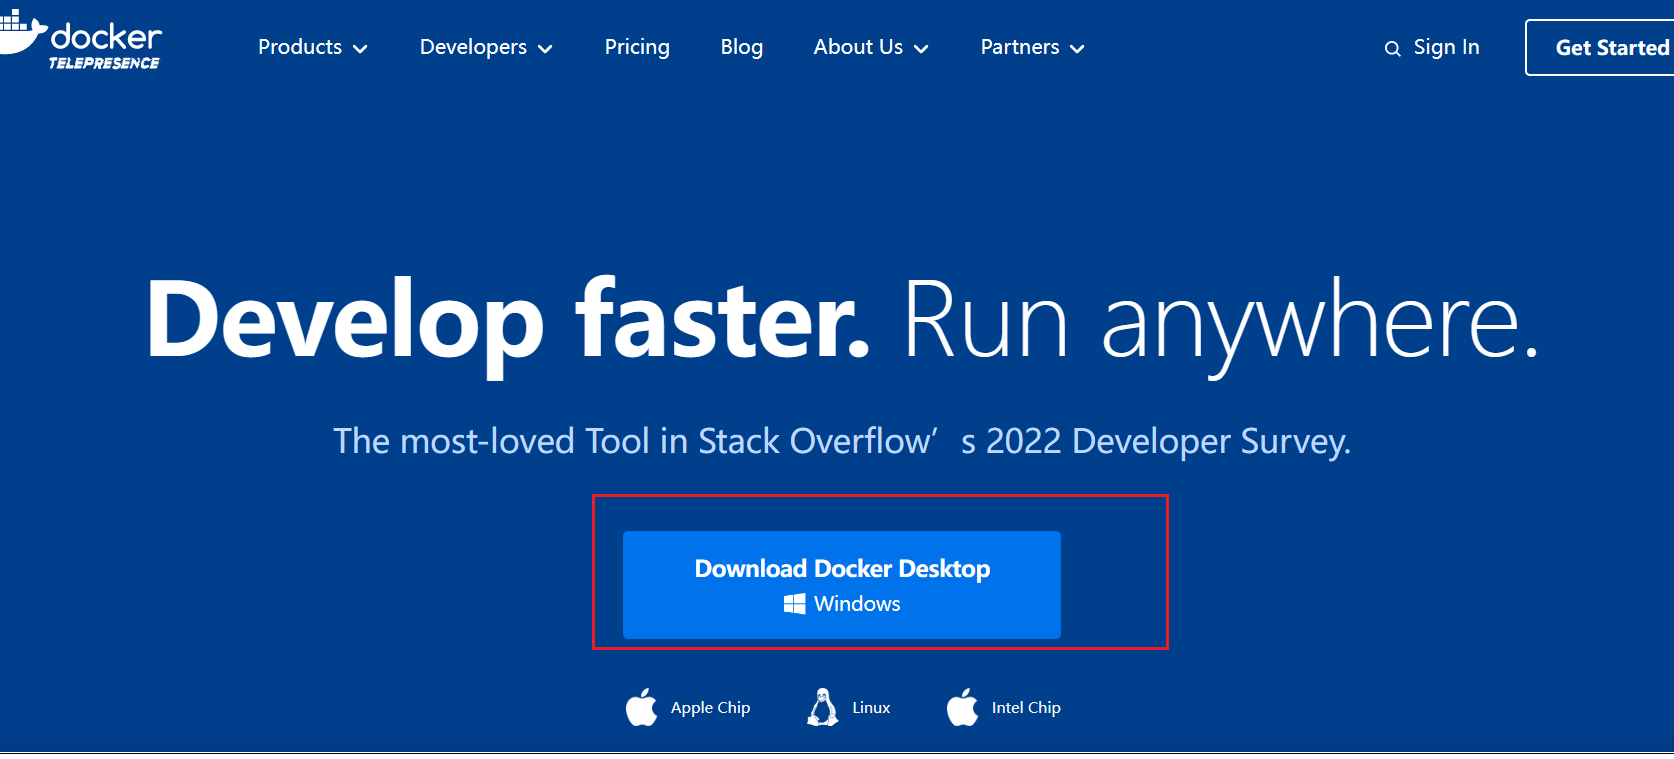 windows DockerDeskTop最新款4.18.0怎么安装  windows 第28张